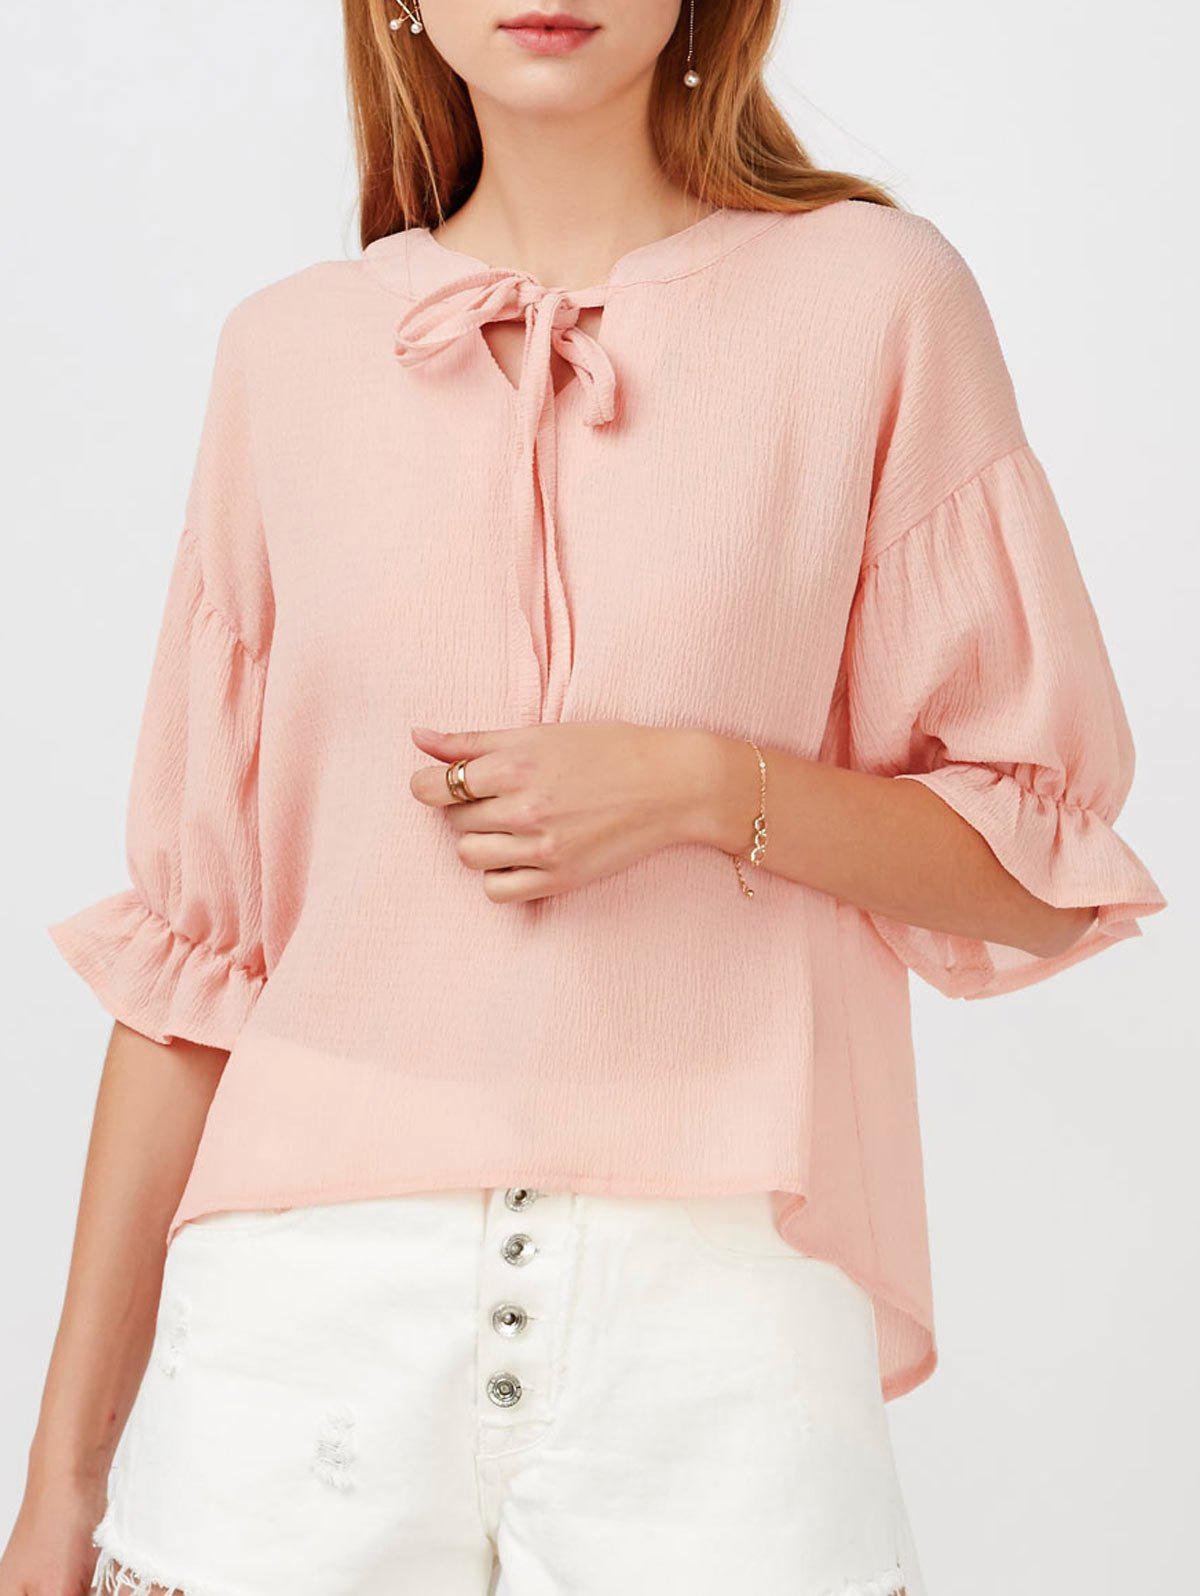 Блузки 72. Розовая шелковая блузка. Розовая шифоновая блузка. Розовая кофточка. Современные тонкие кофточки из шифона.